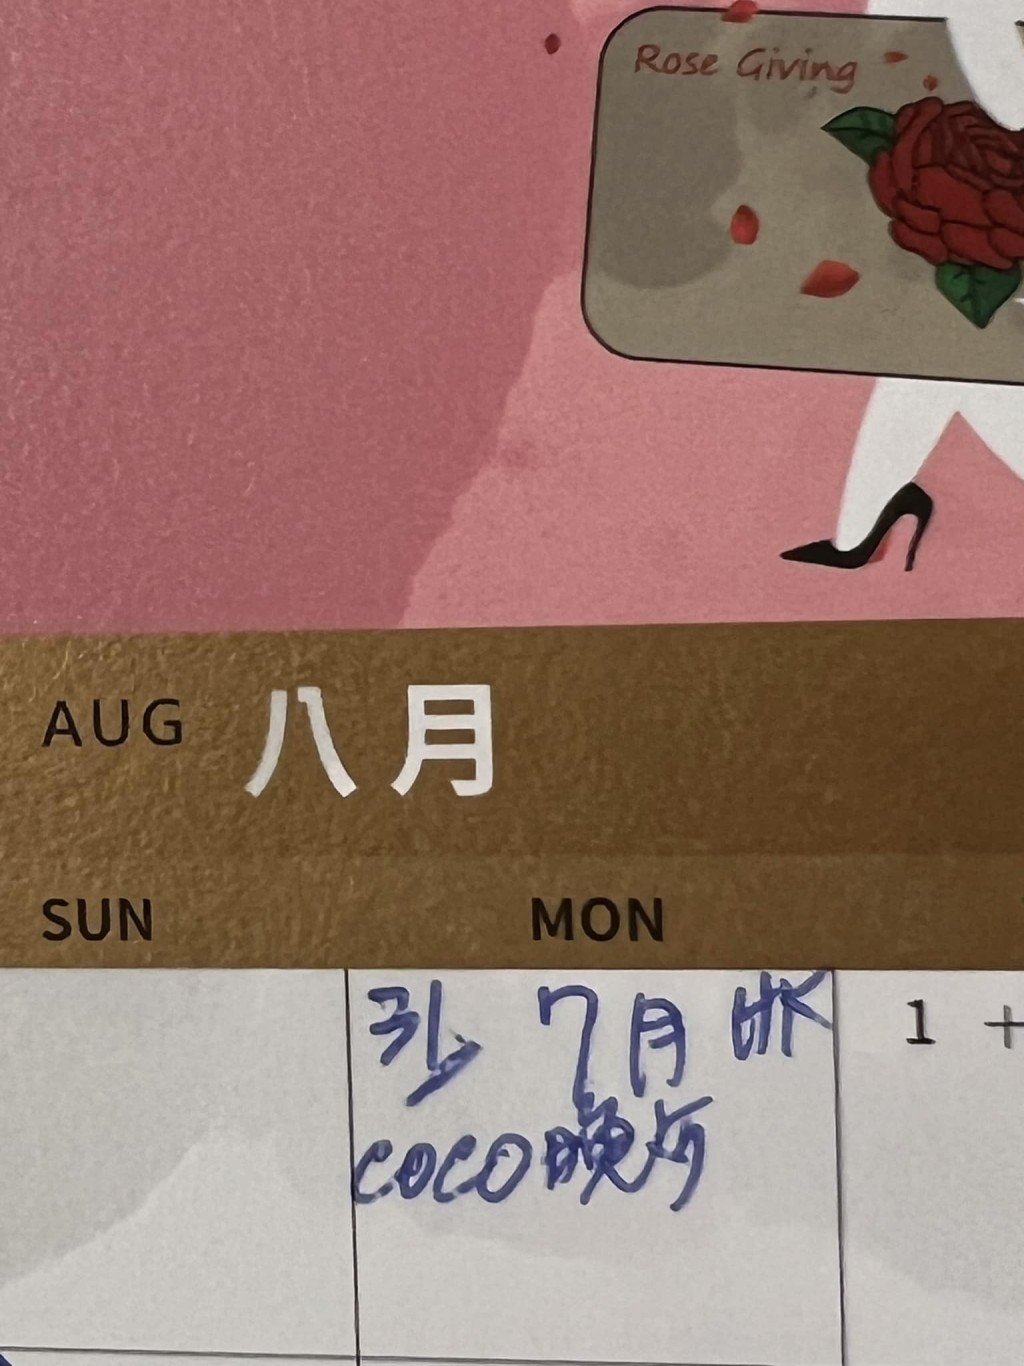 甄妮早前晒出行程表，写上：「7月HK coco晚餐。」曝光原定今日约了李玟在港见面。